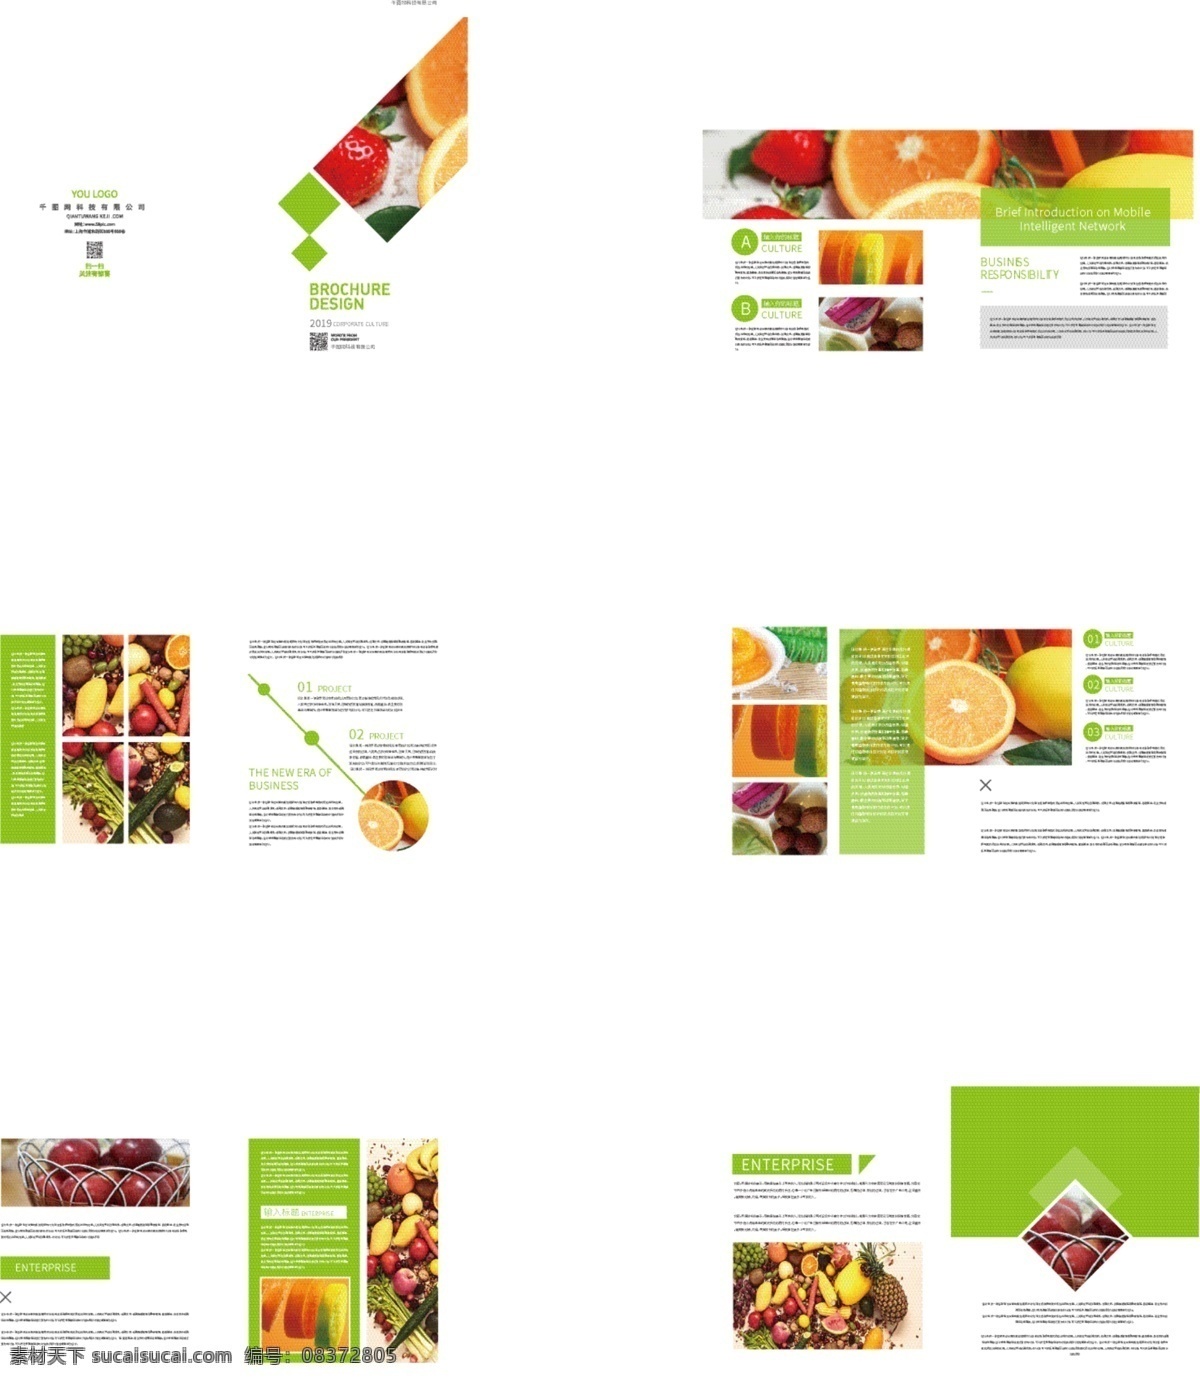 绿色 水果 画册设计 绿色画册 水果画册 食品画册 简约画册 橙子 苹果 草莓 食品 画册 画册封面 整套画册